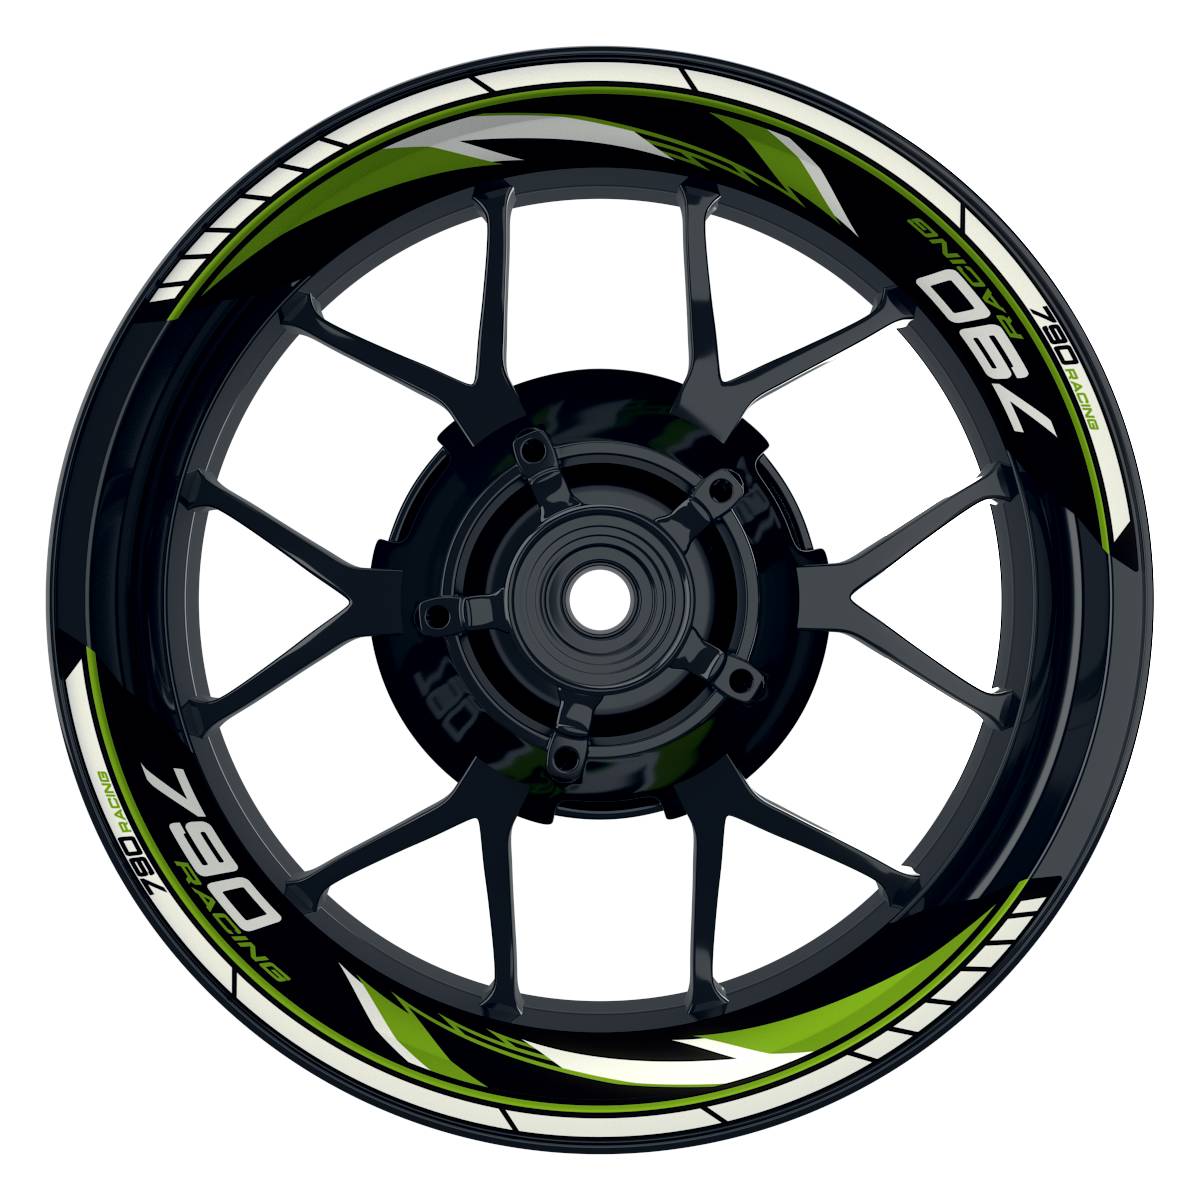 KTM Racing 790 Razor schwarz gruen Frontansicht